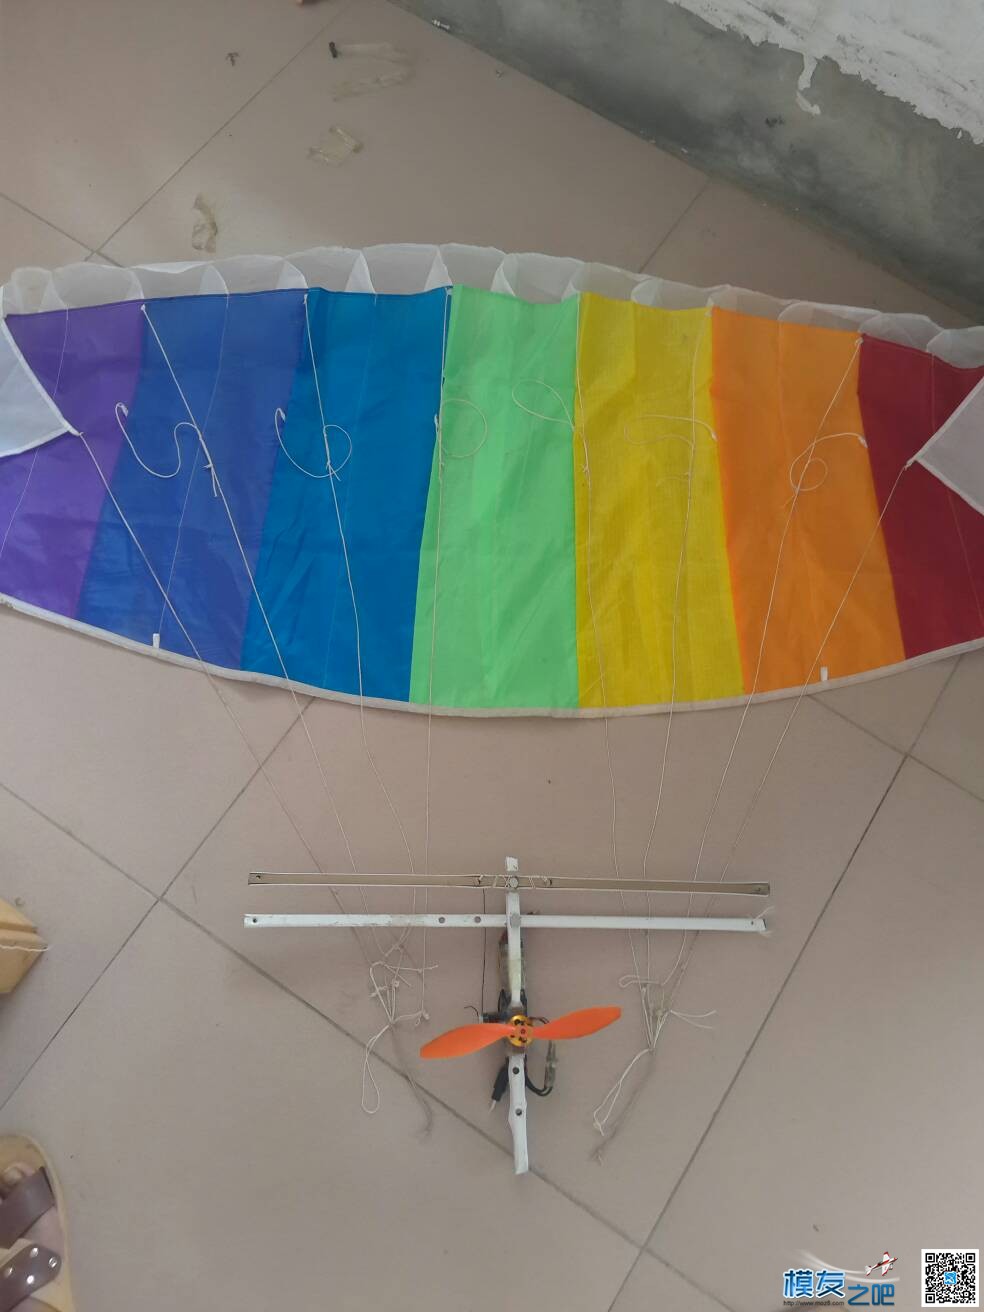 滑翔伞 电池,滑翔伞 作者:lijinzhe 5566 